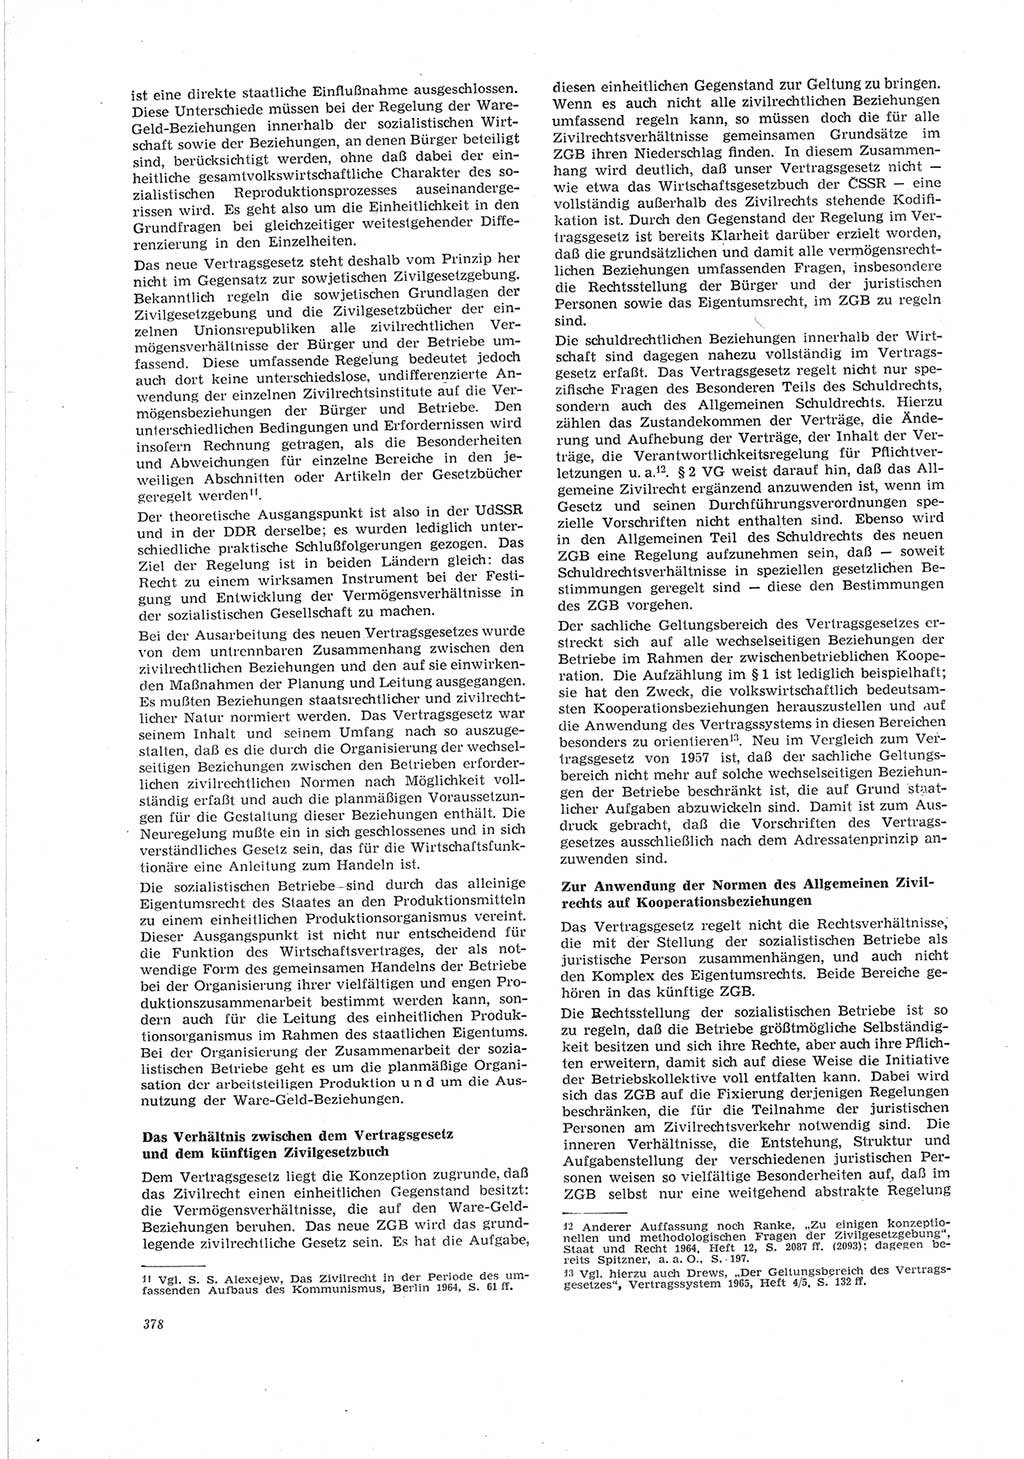 Neue Justiz (NJ), Zeitschrift für Recht und Rechtswissenschaft [Deutsche Demokratische Republik (DDR)], 19. Jahrgang 1965, Seite 378 (NJ DDR 1965, S. 378)